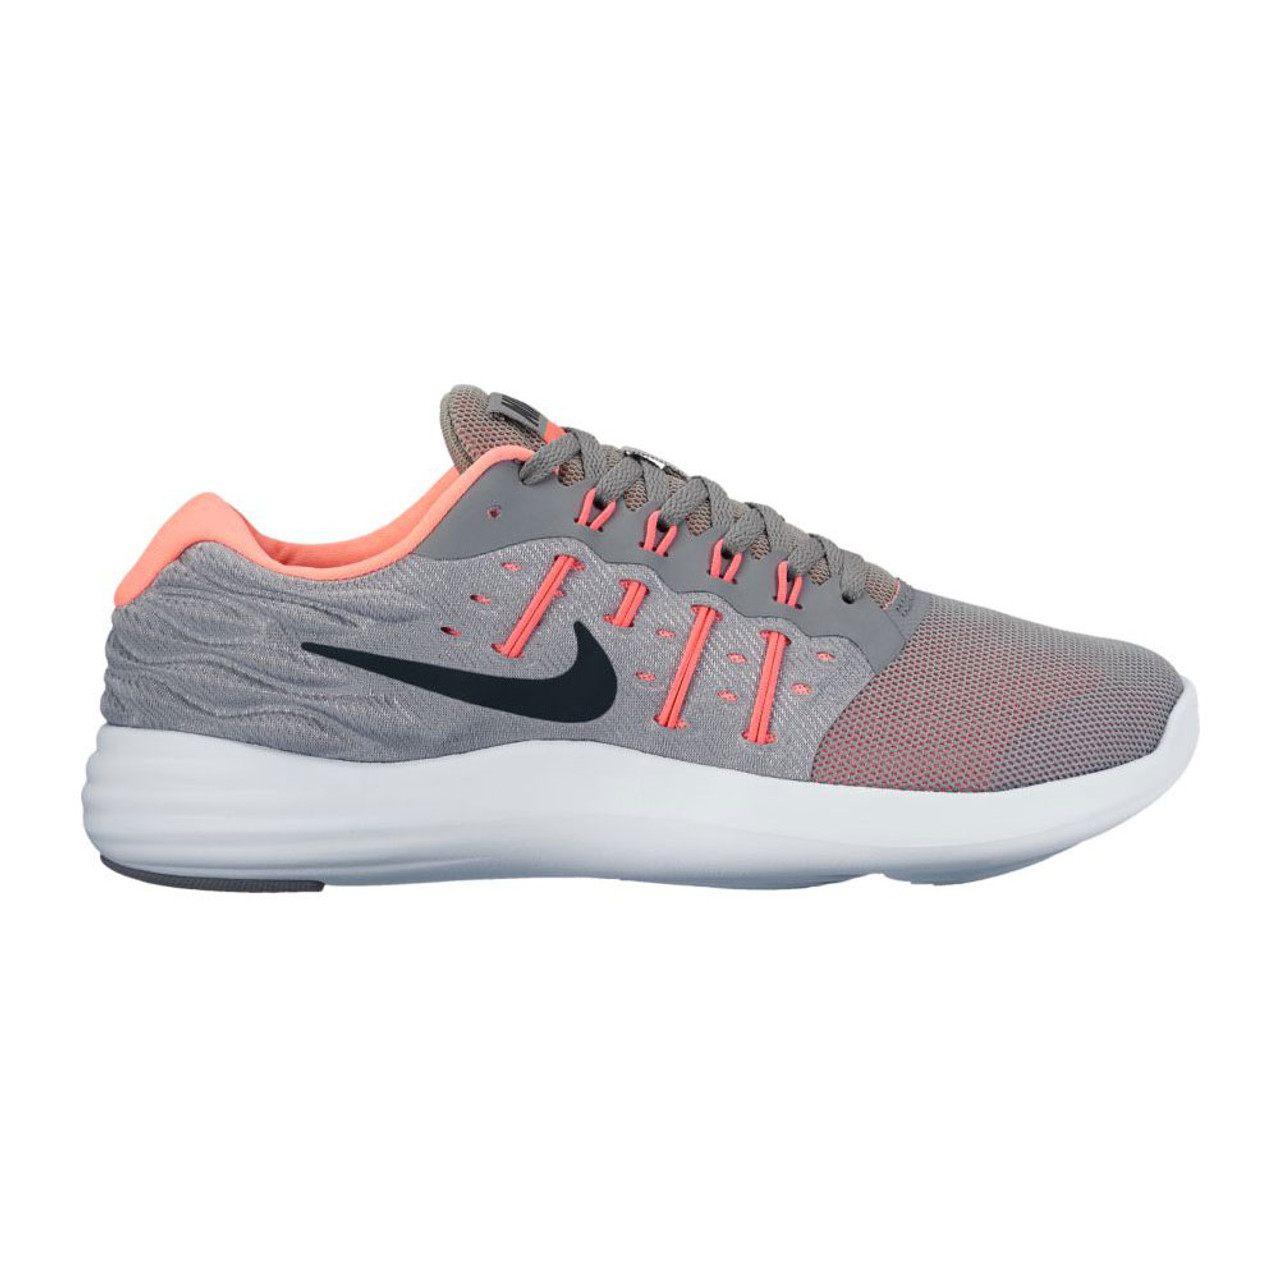 Nike Women's Lunarstelos Running Shoe - Grey Discount Nike Ladies Athletic & More - | Shoolu.com